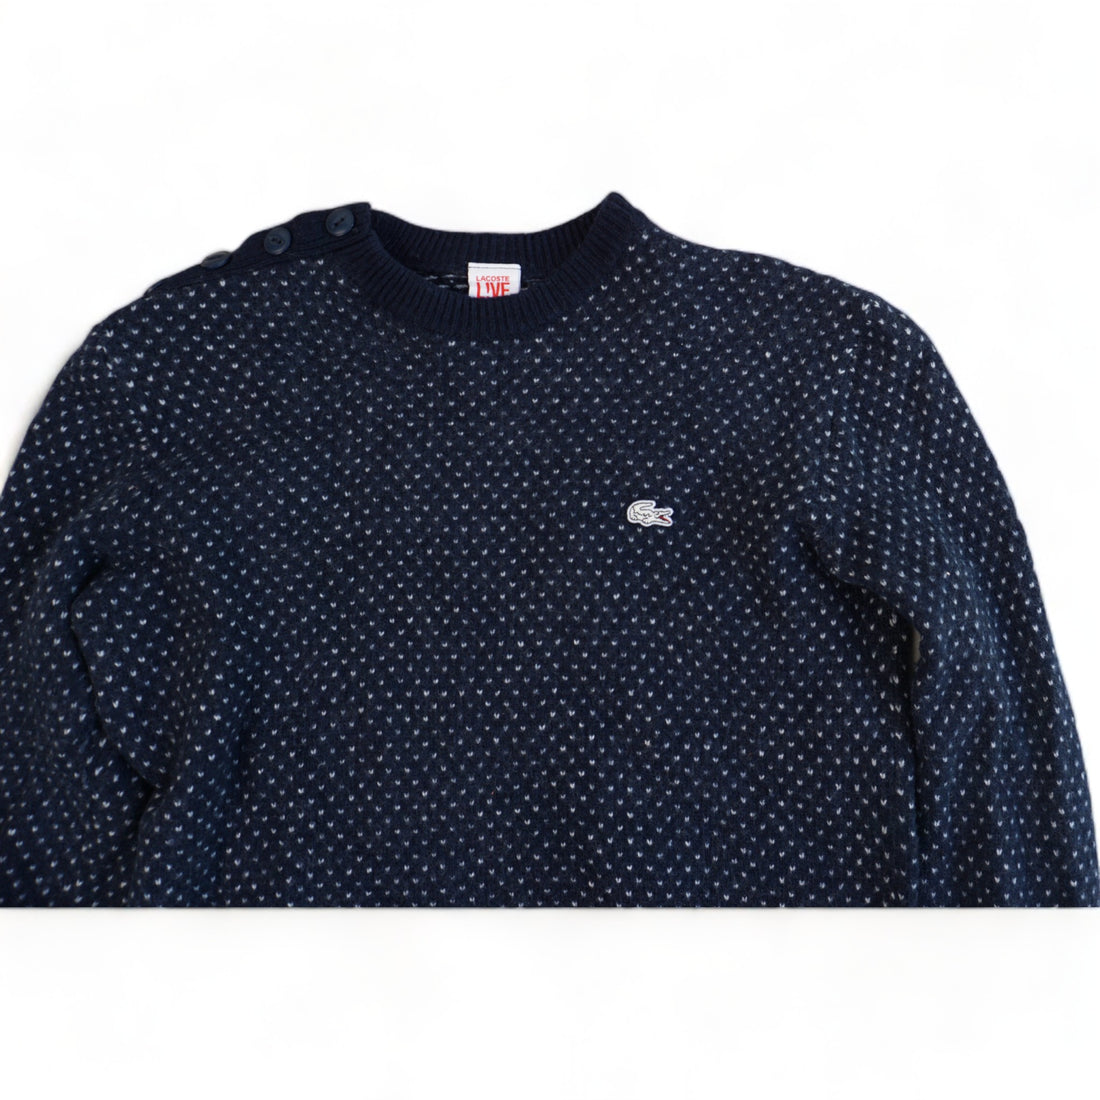 Lacoste Sweater (Women S)